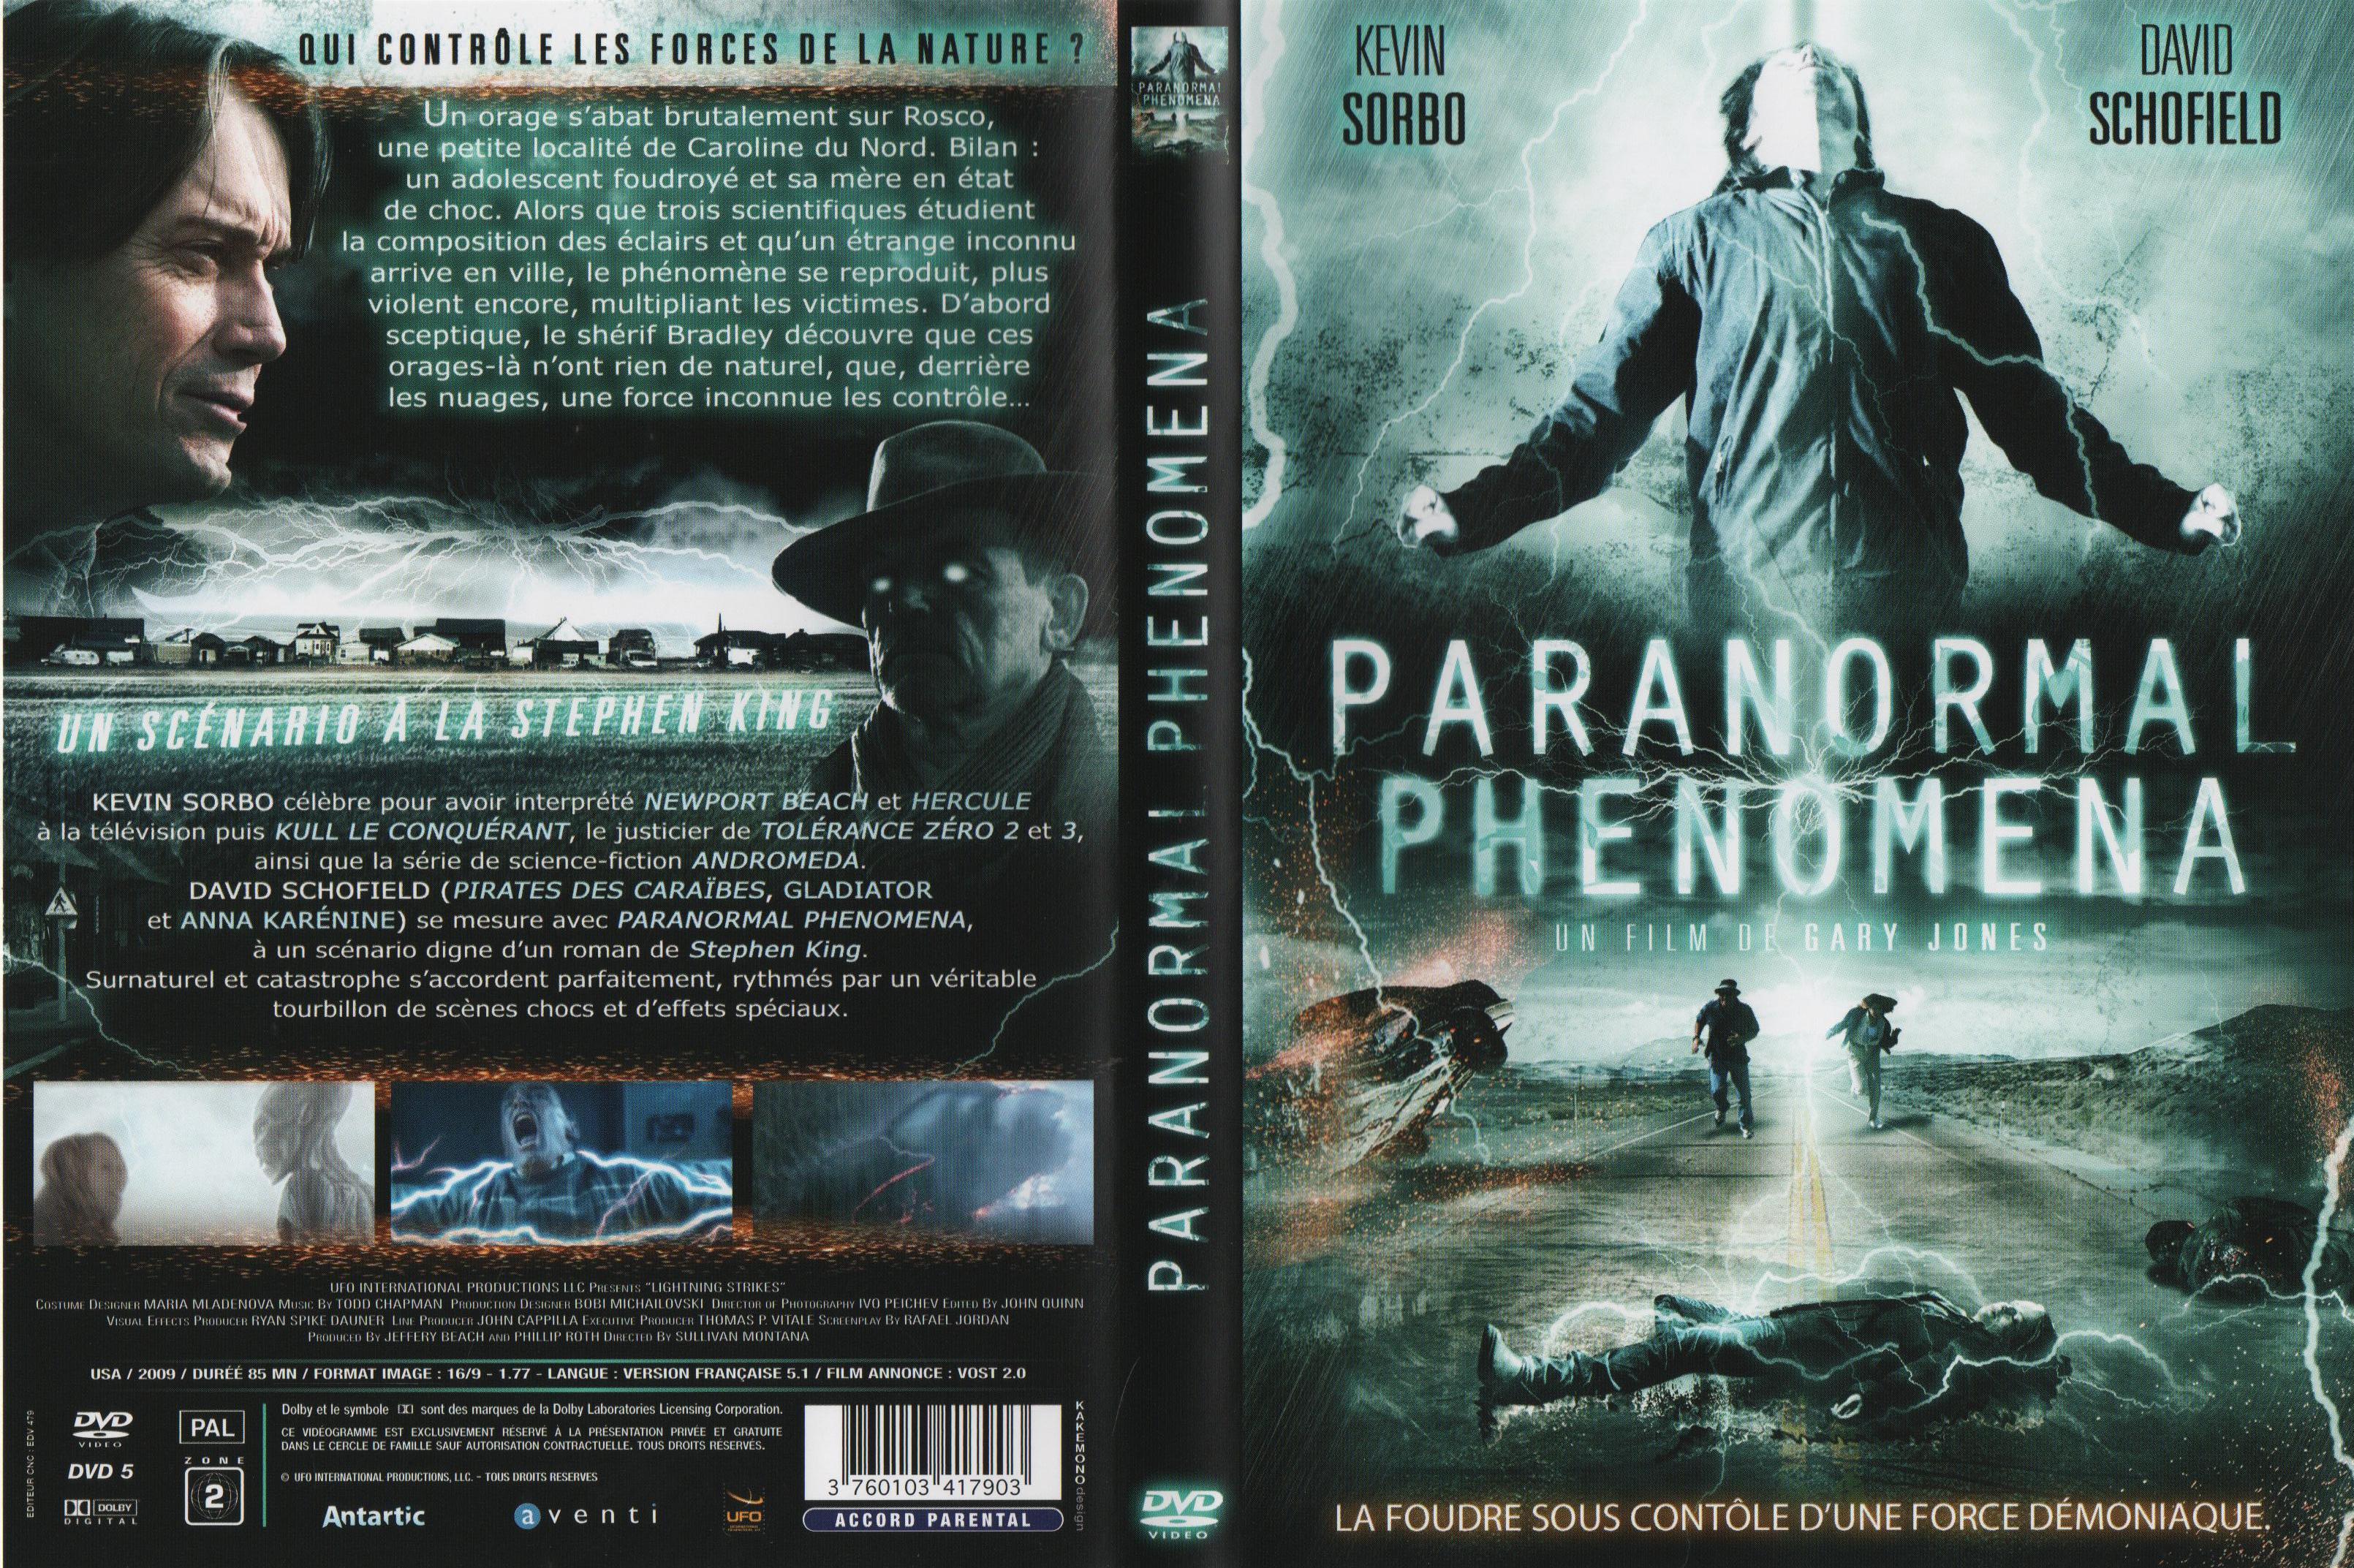 Jaquette DVD Paranormal phenomena